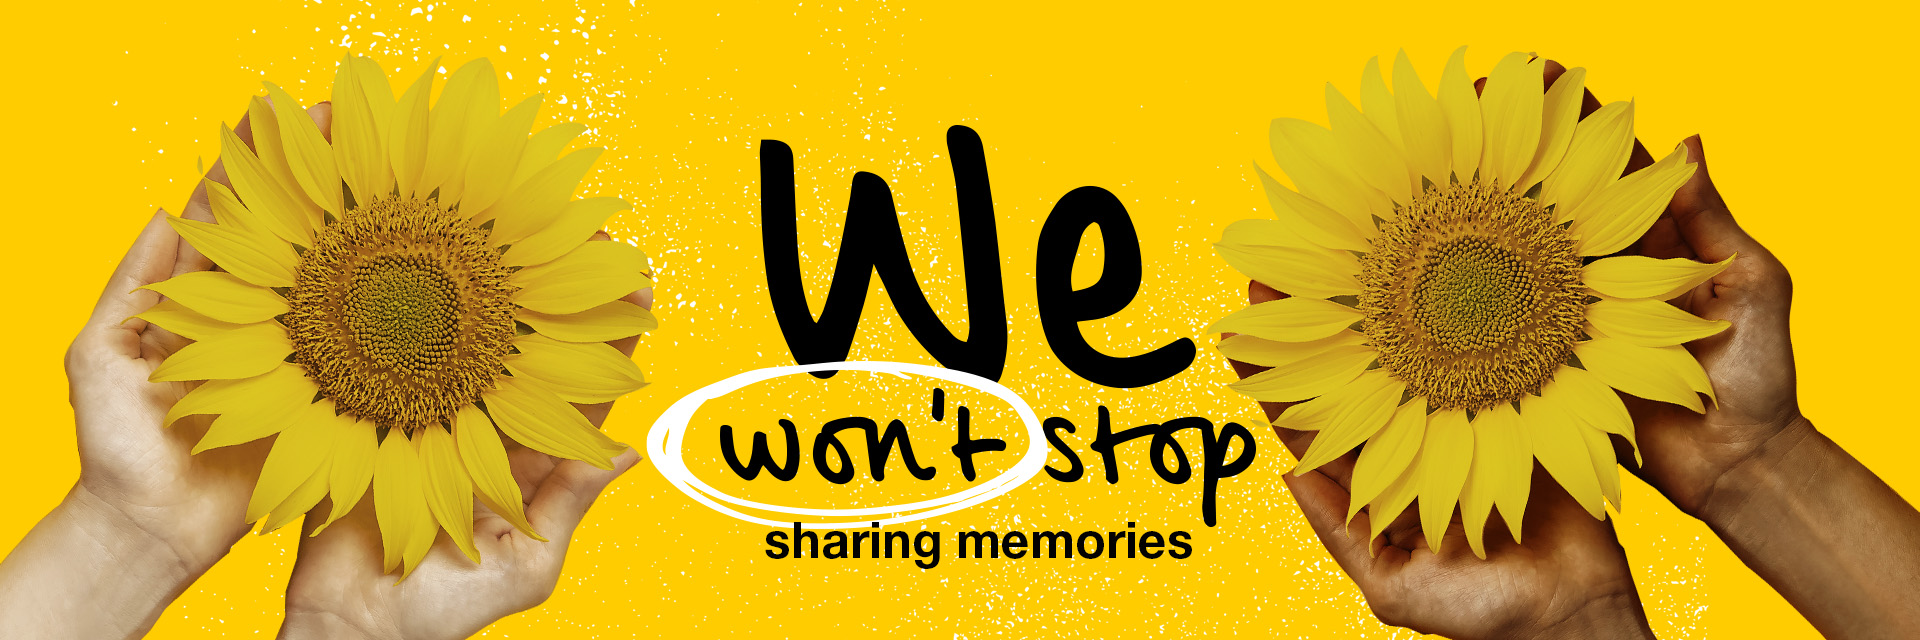 CF Week 2021 we won't stop sharing memories dedication page banner